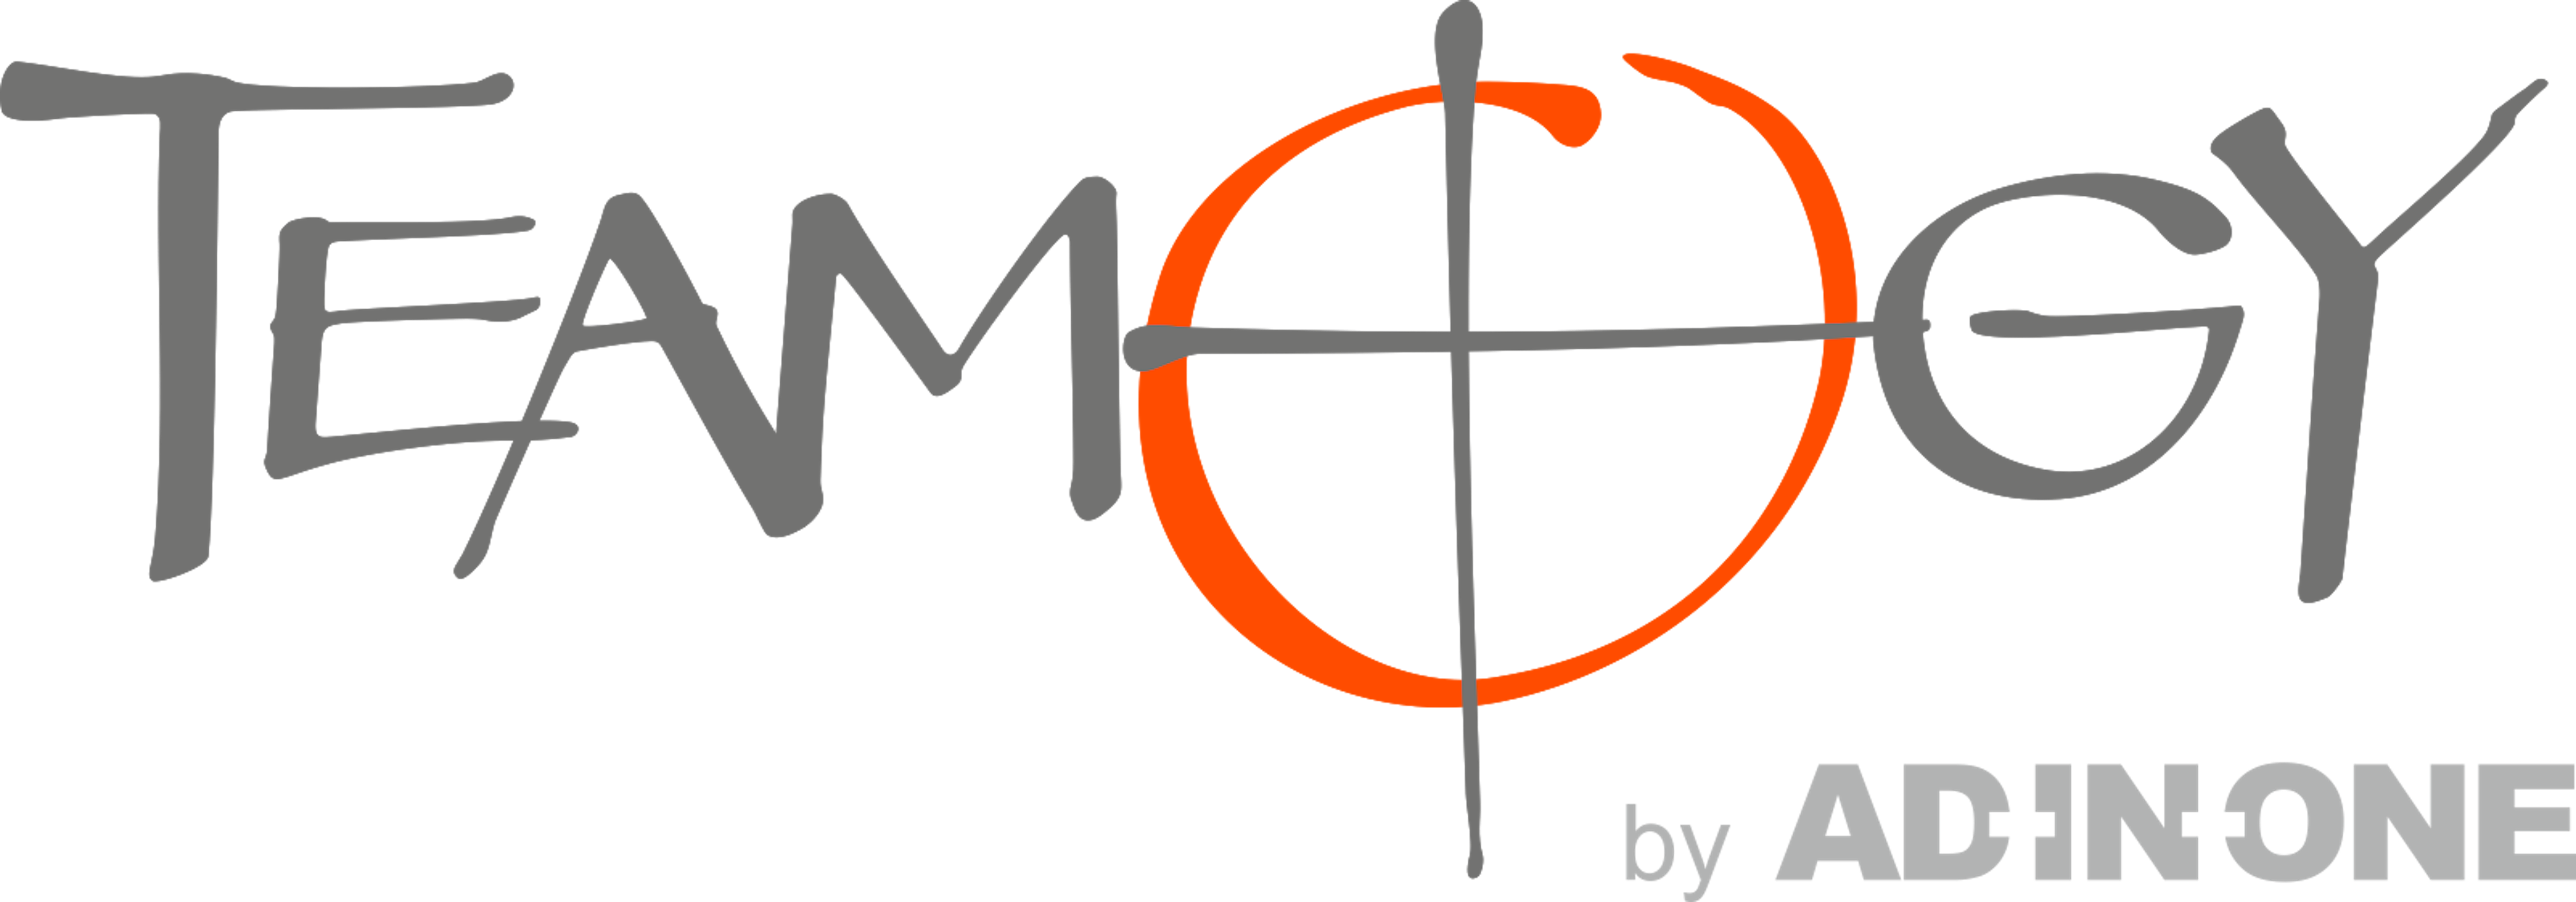 Teamogy Logo